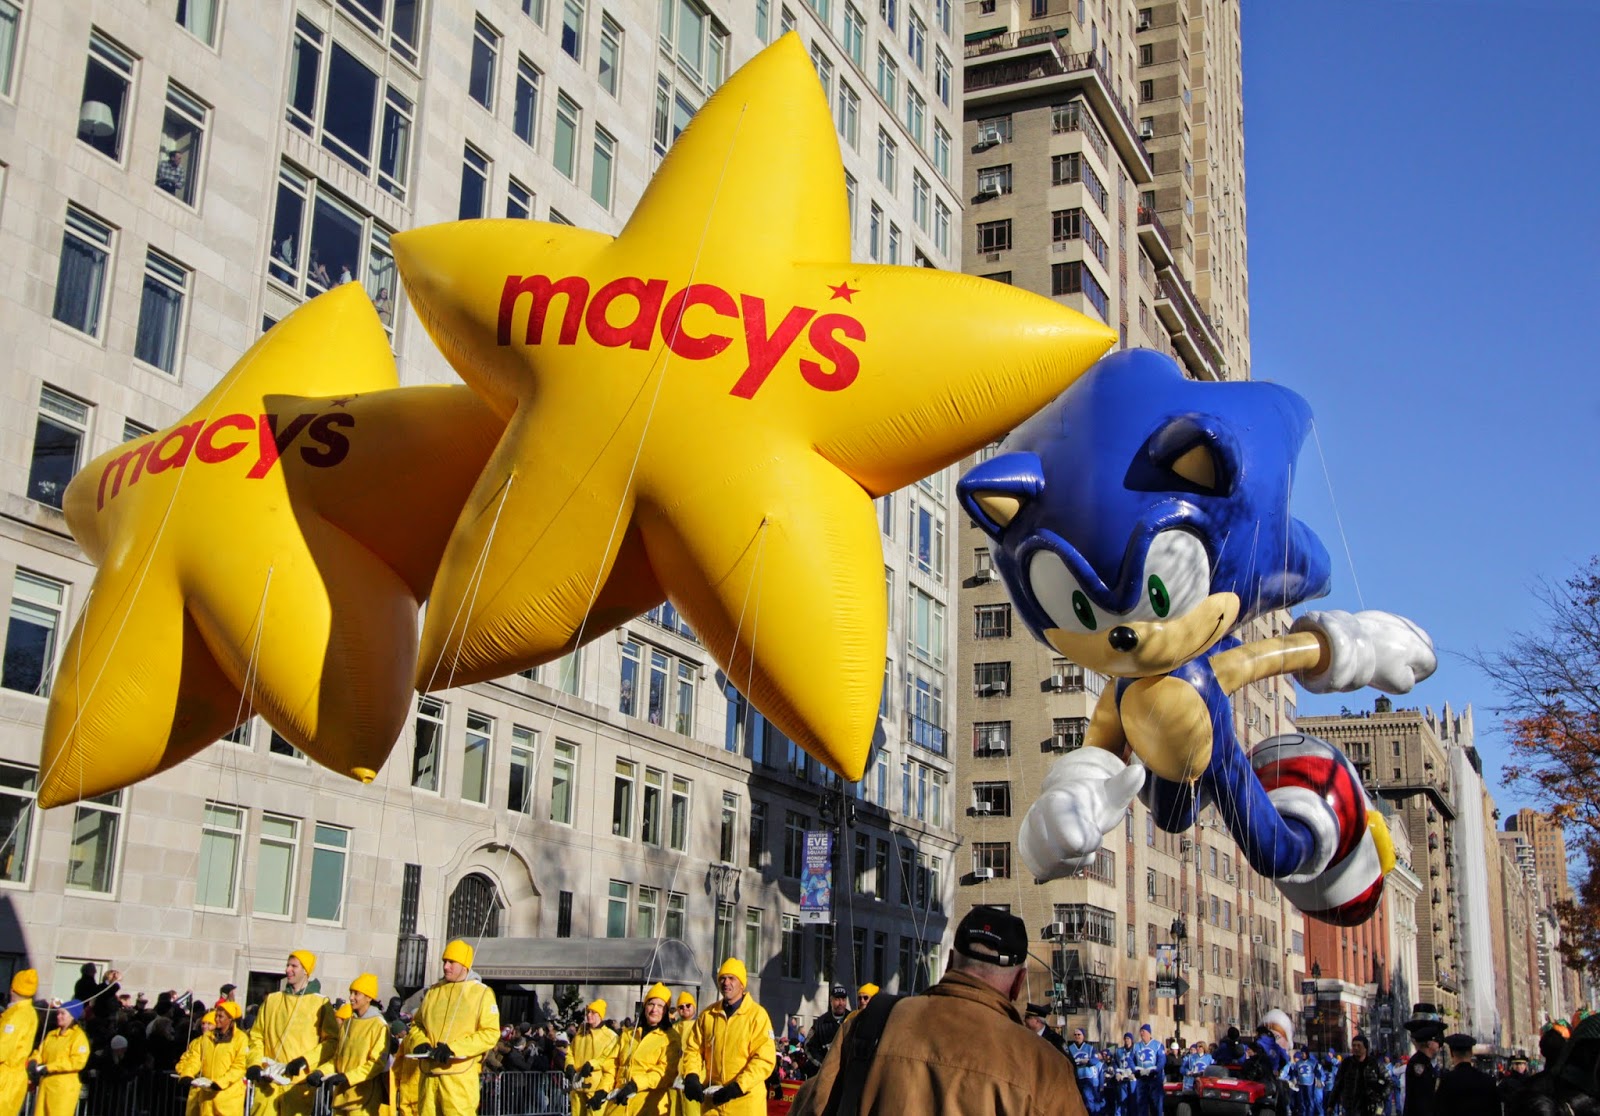 The Macy's Parade